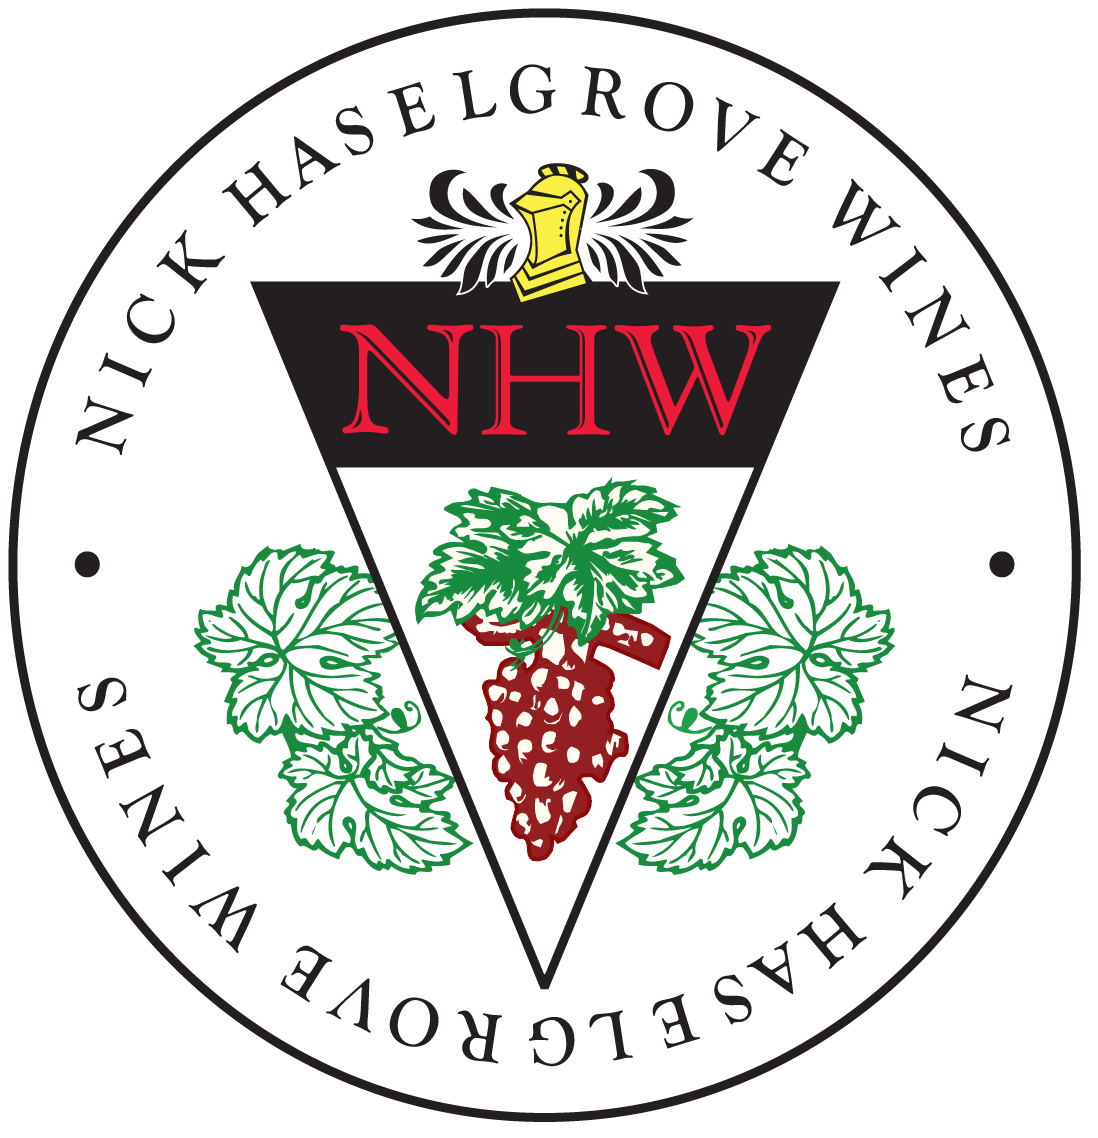 No Winery Logo